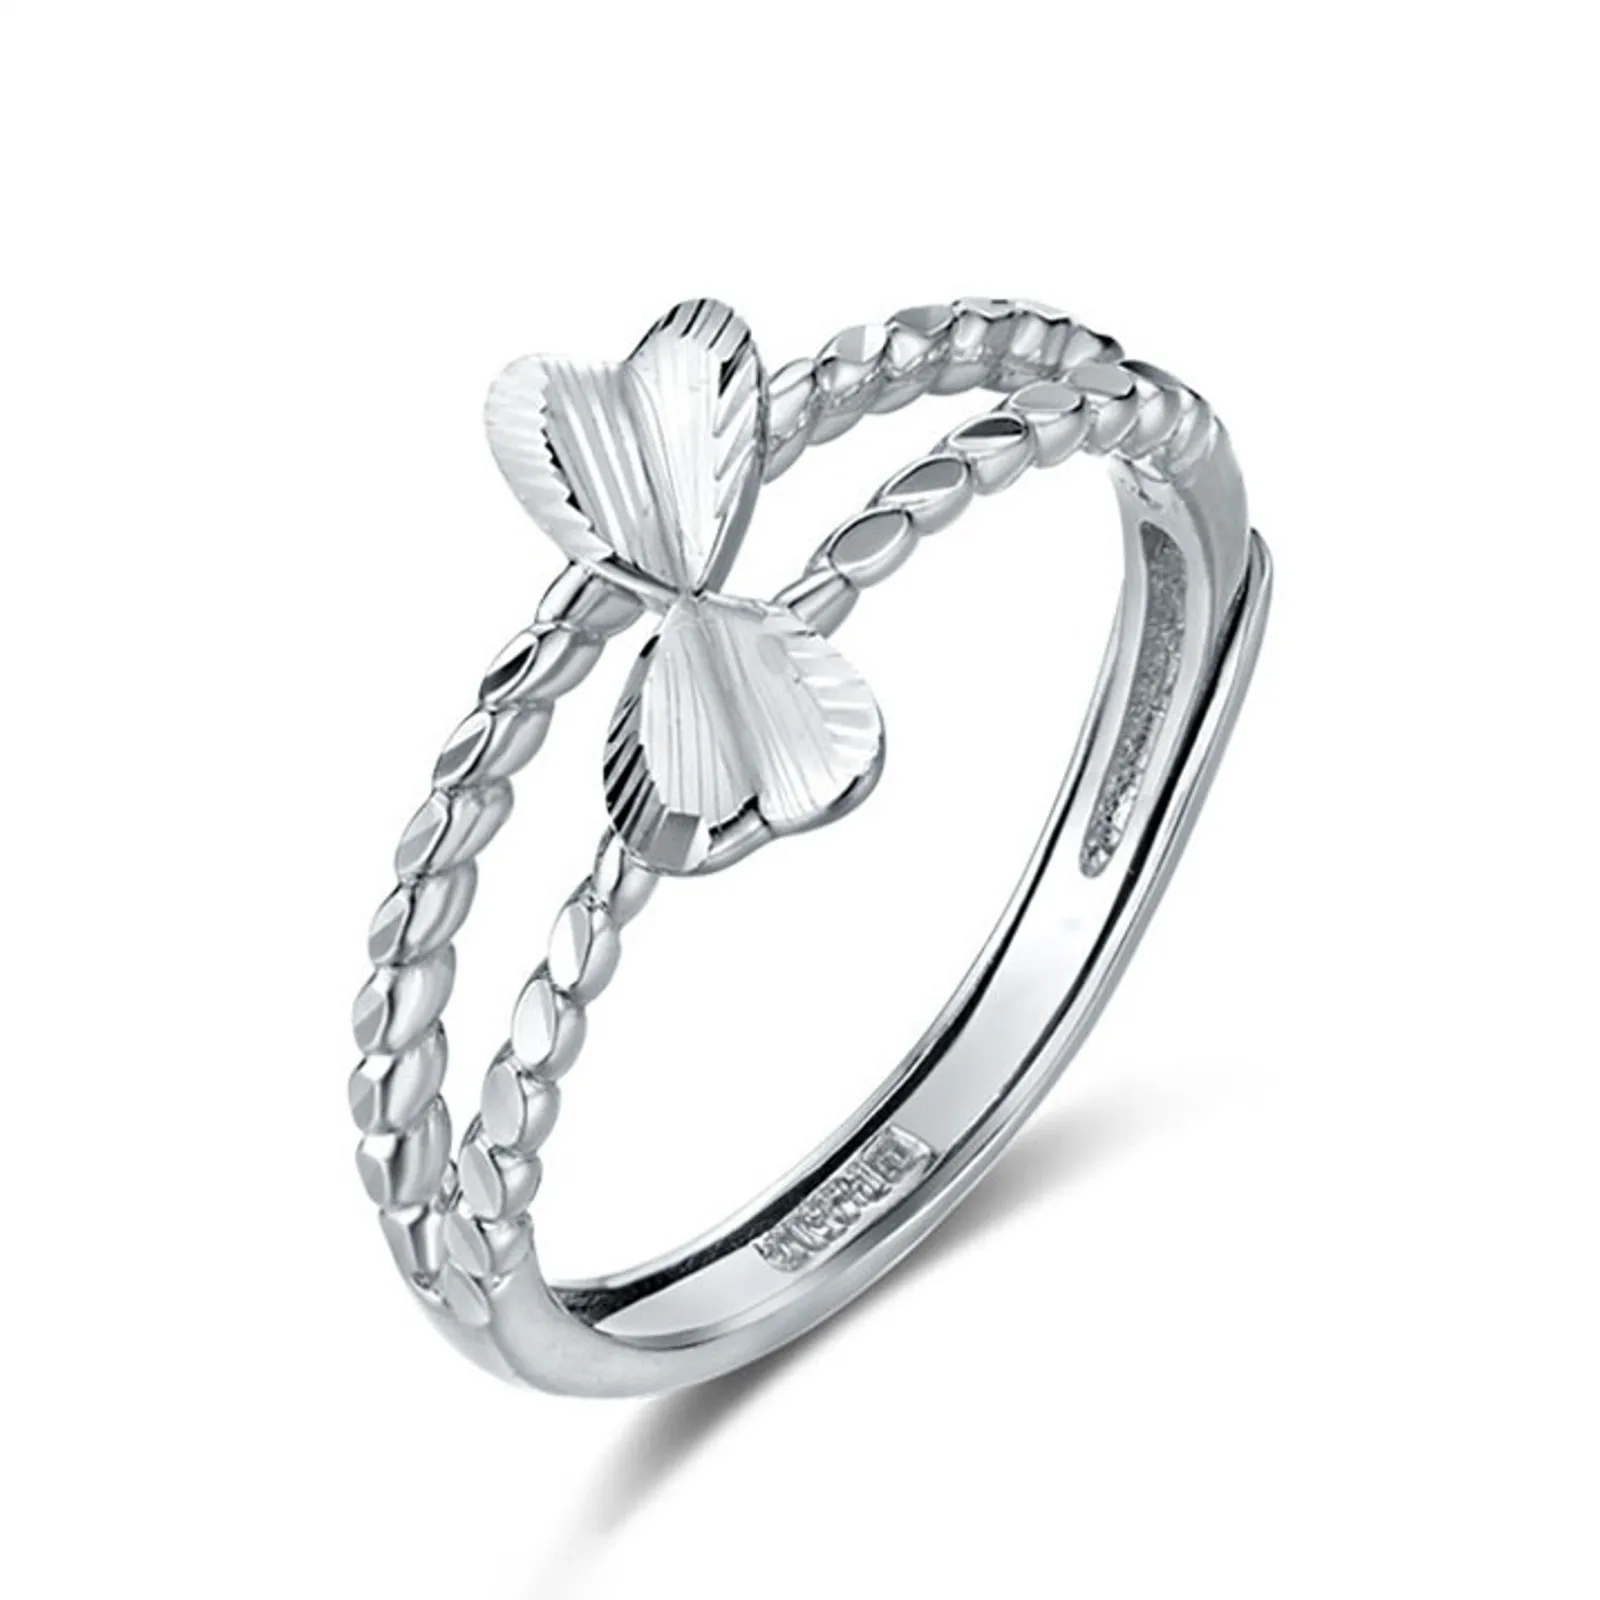 1 шт. Кольцо из настоящей чистой платины 950 пробы, женское подарочное кольцо с двойным сердечком-бабочкой, 2,9-3g PT950